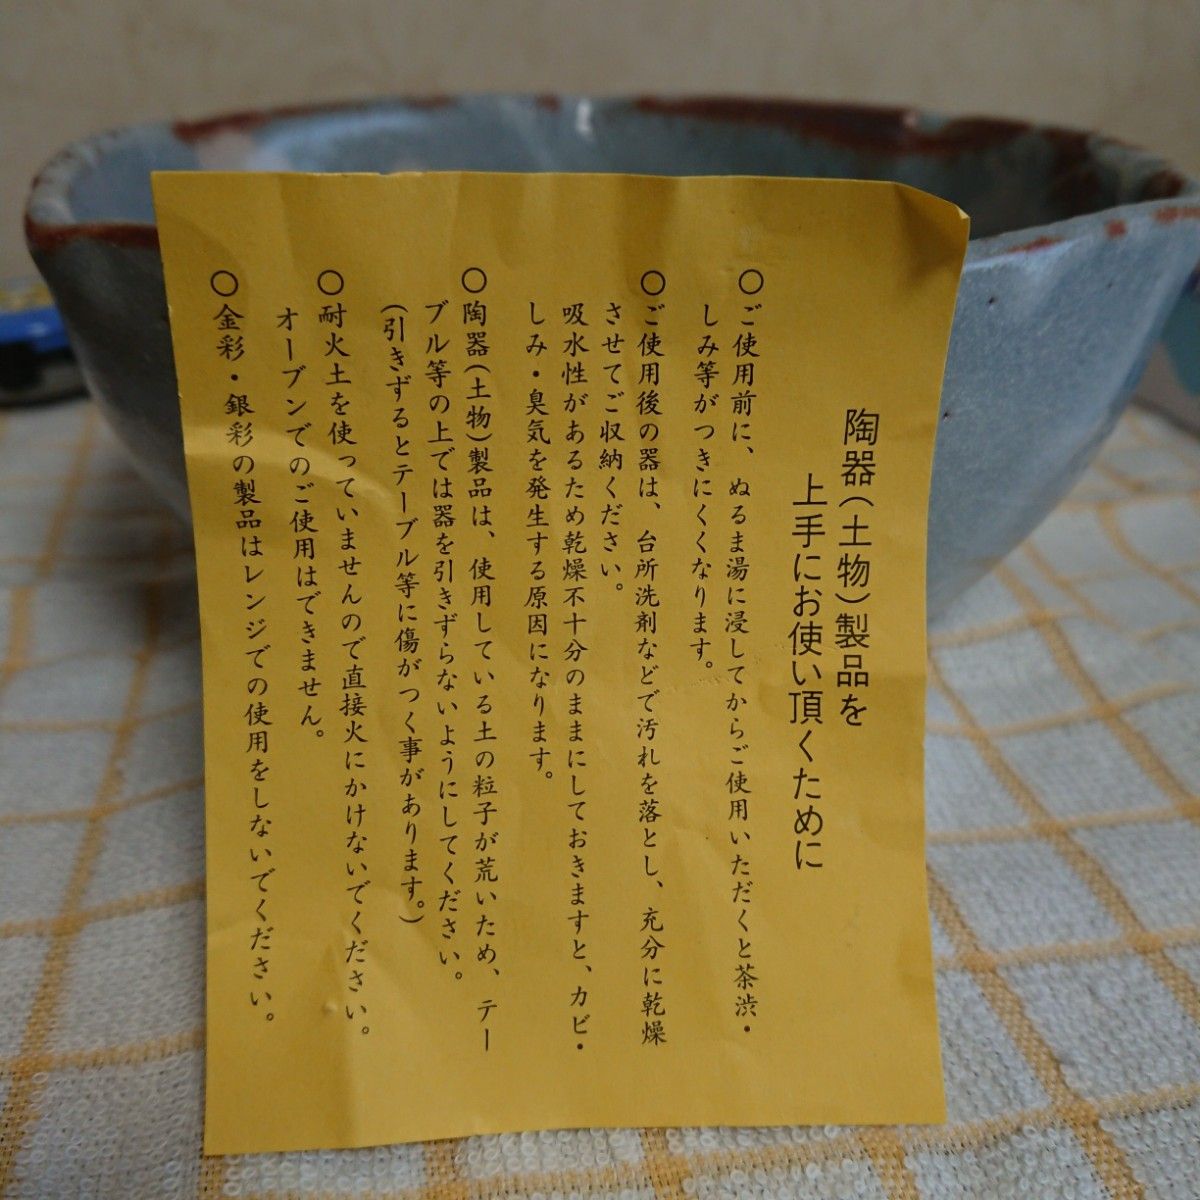 【未使用品】六角 大鉢 盛鉢 茶道具 和食器